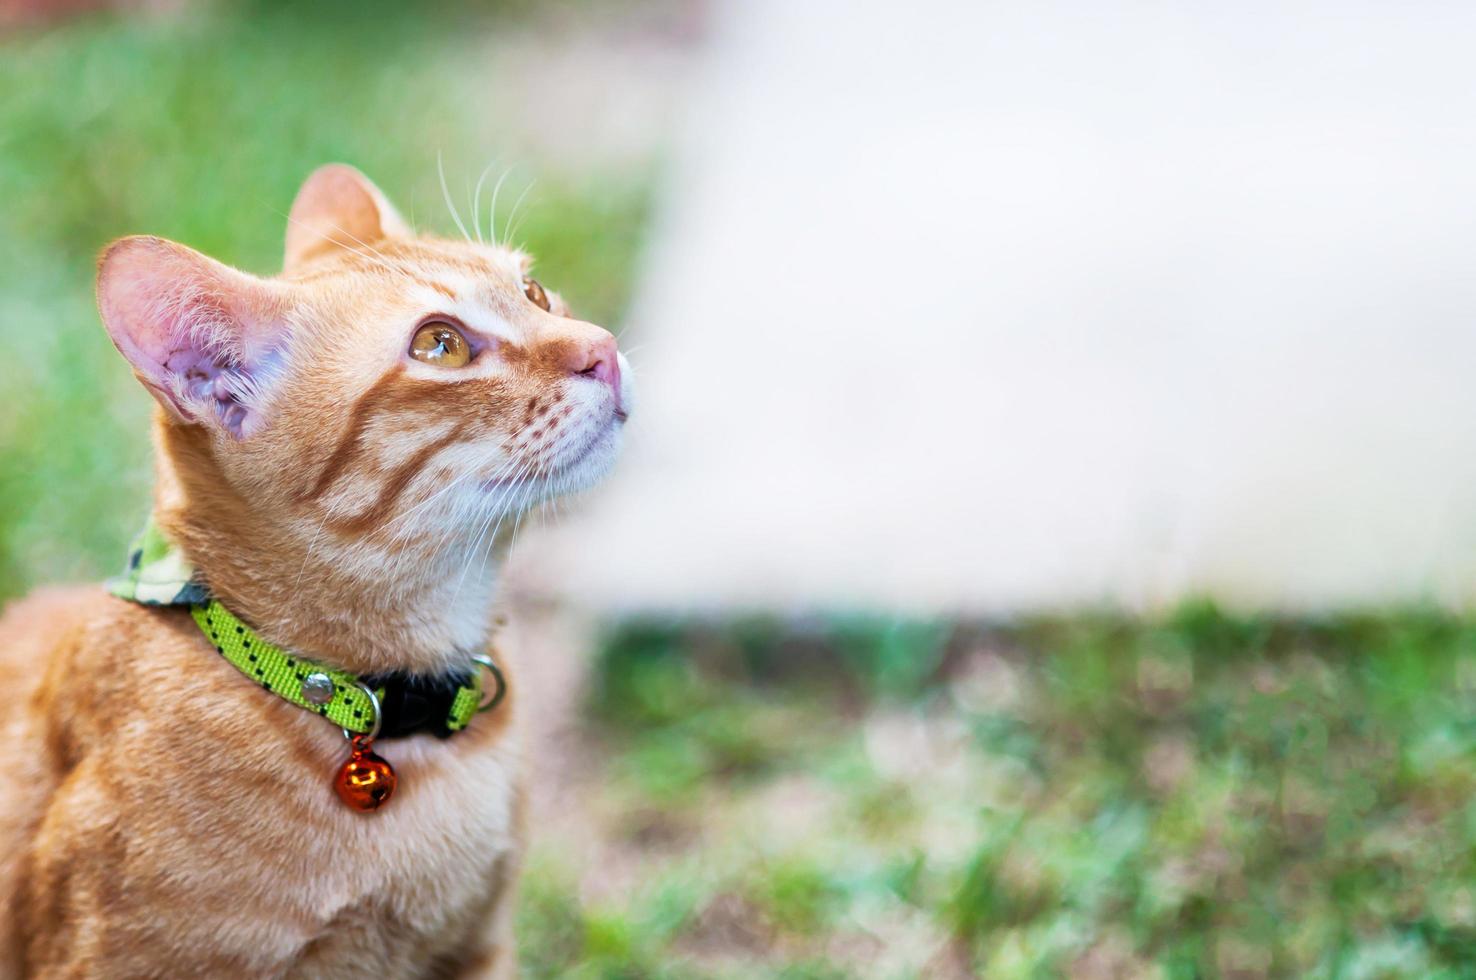 encantador gato doméstico marrón en un jardín verde - lindo concepto de fondo animal foto